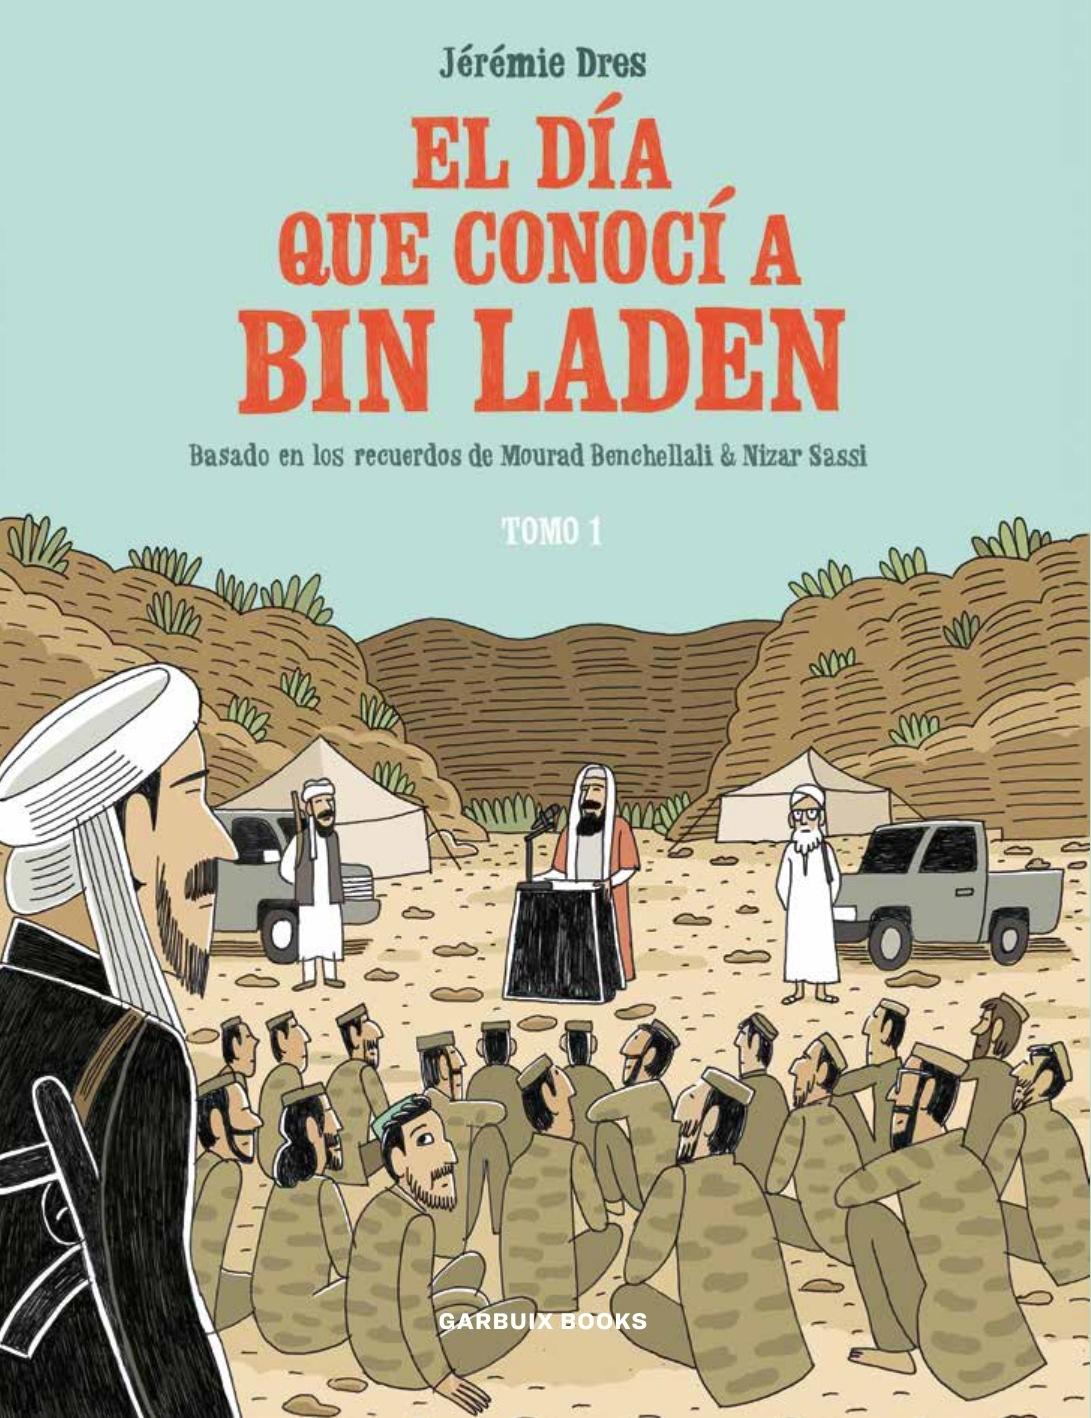 El Día que Conocí a Bin Laden "Basado en los Recuerdos de Mourad Benchellali & Nizar Sassi". 